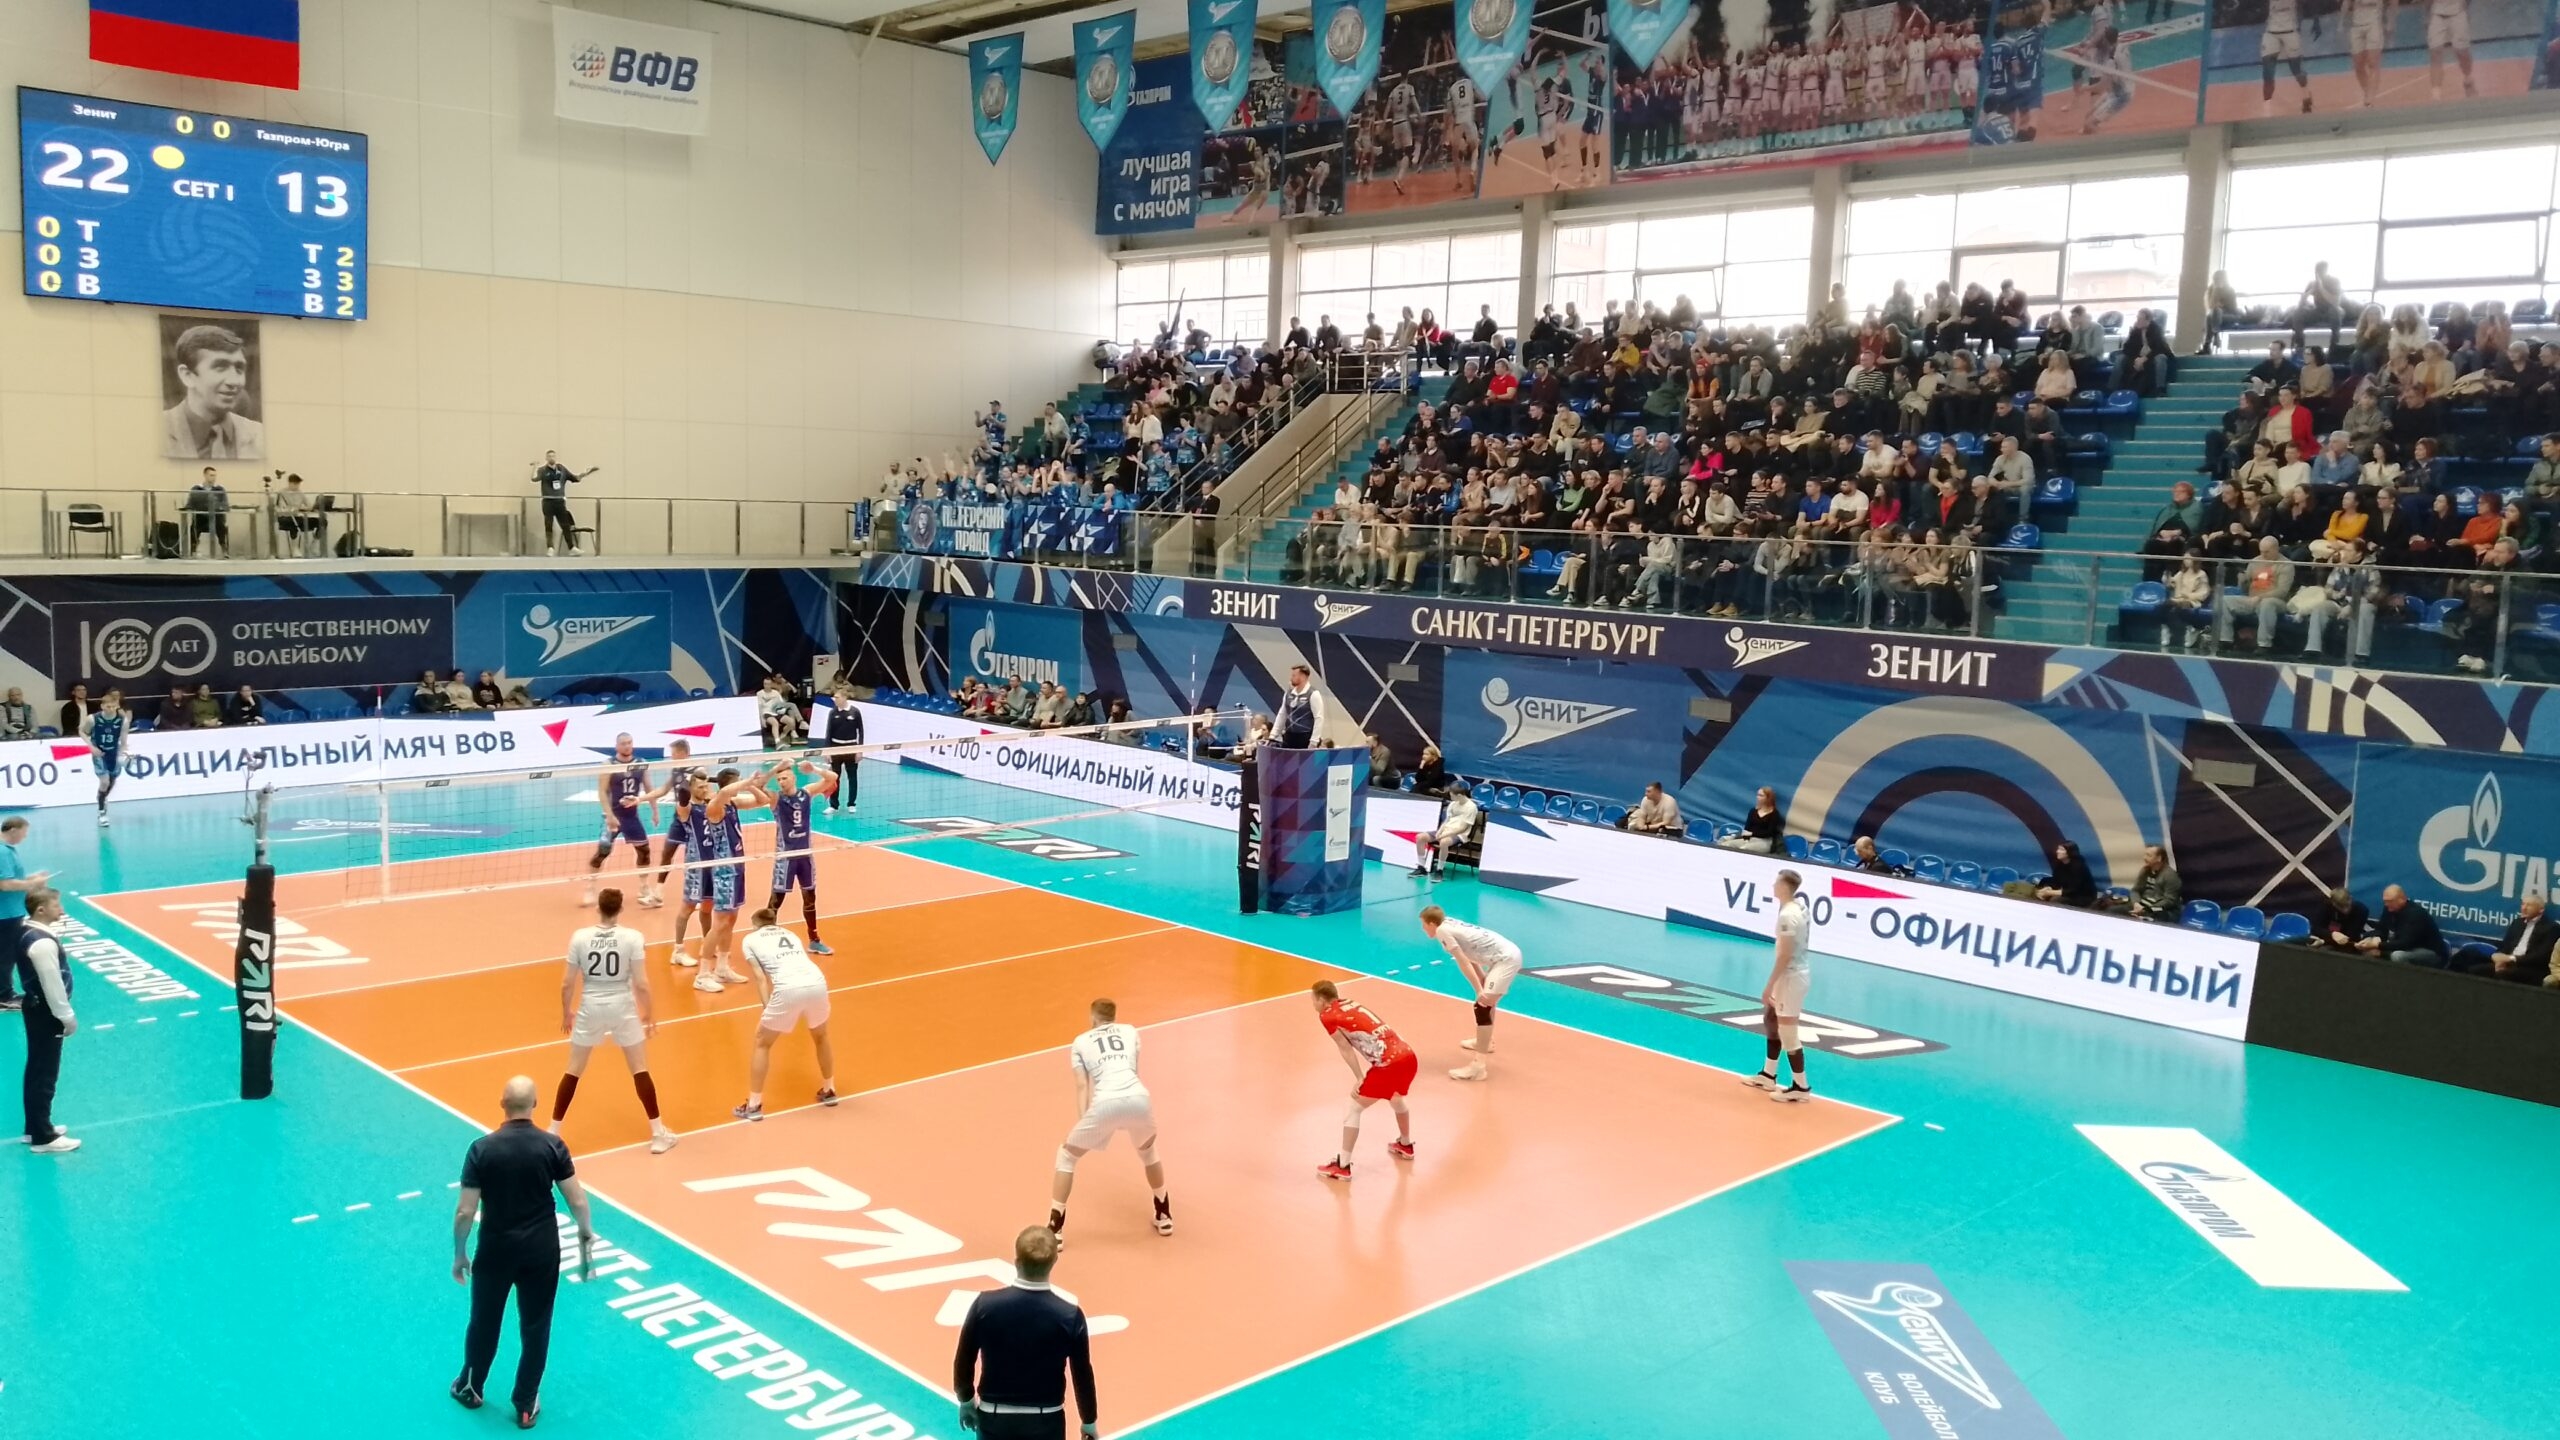 Волейбольный «Зенит» проиграл во втором матче «Локомотиву»